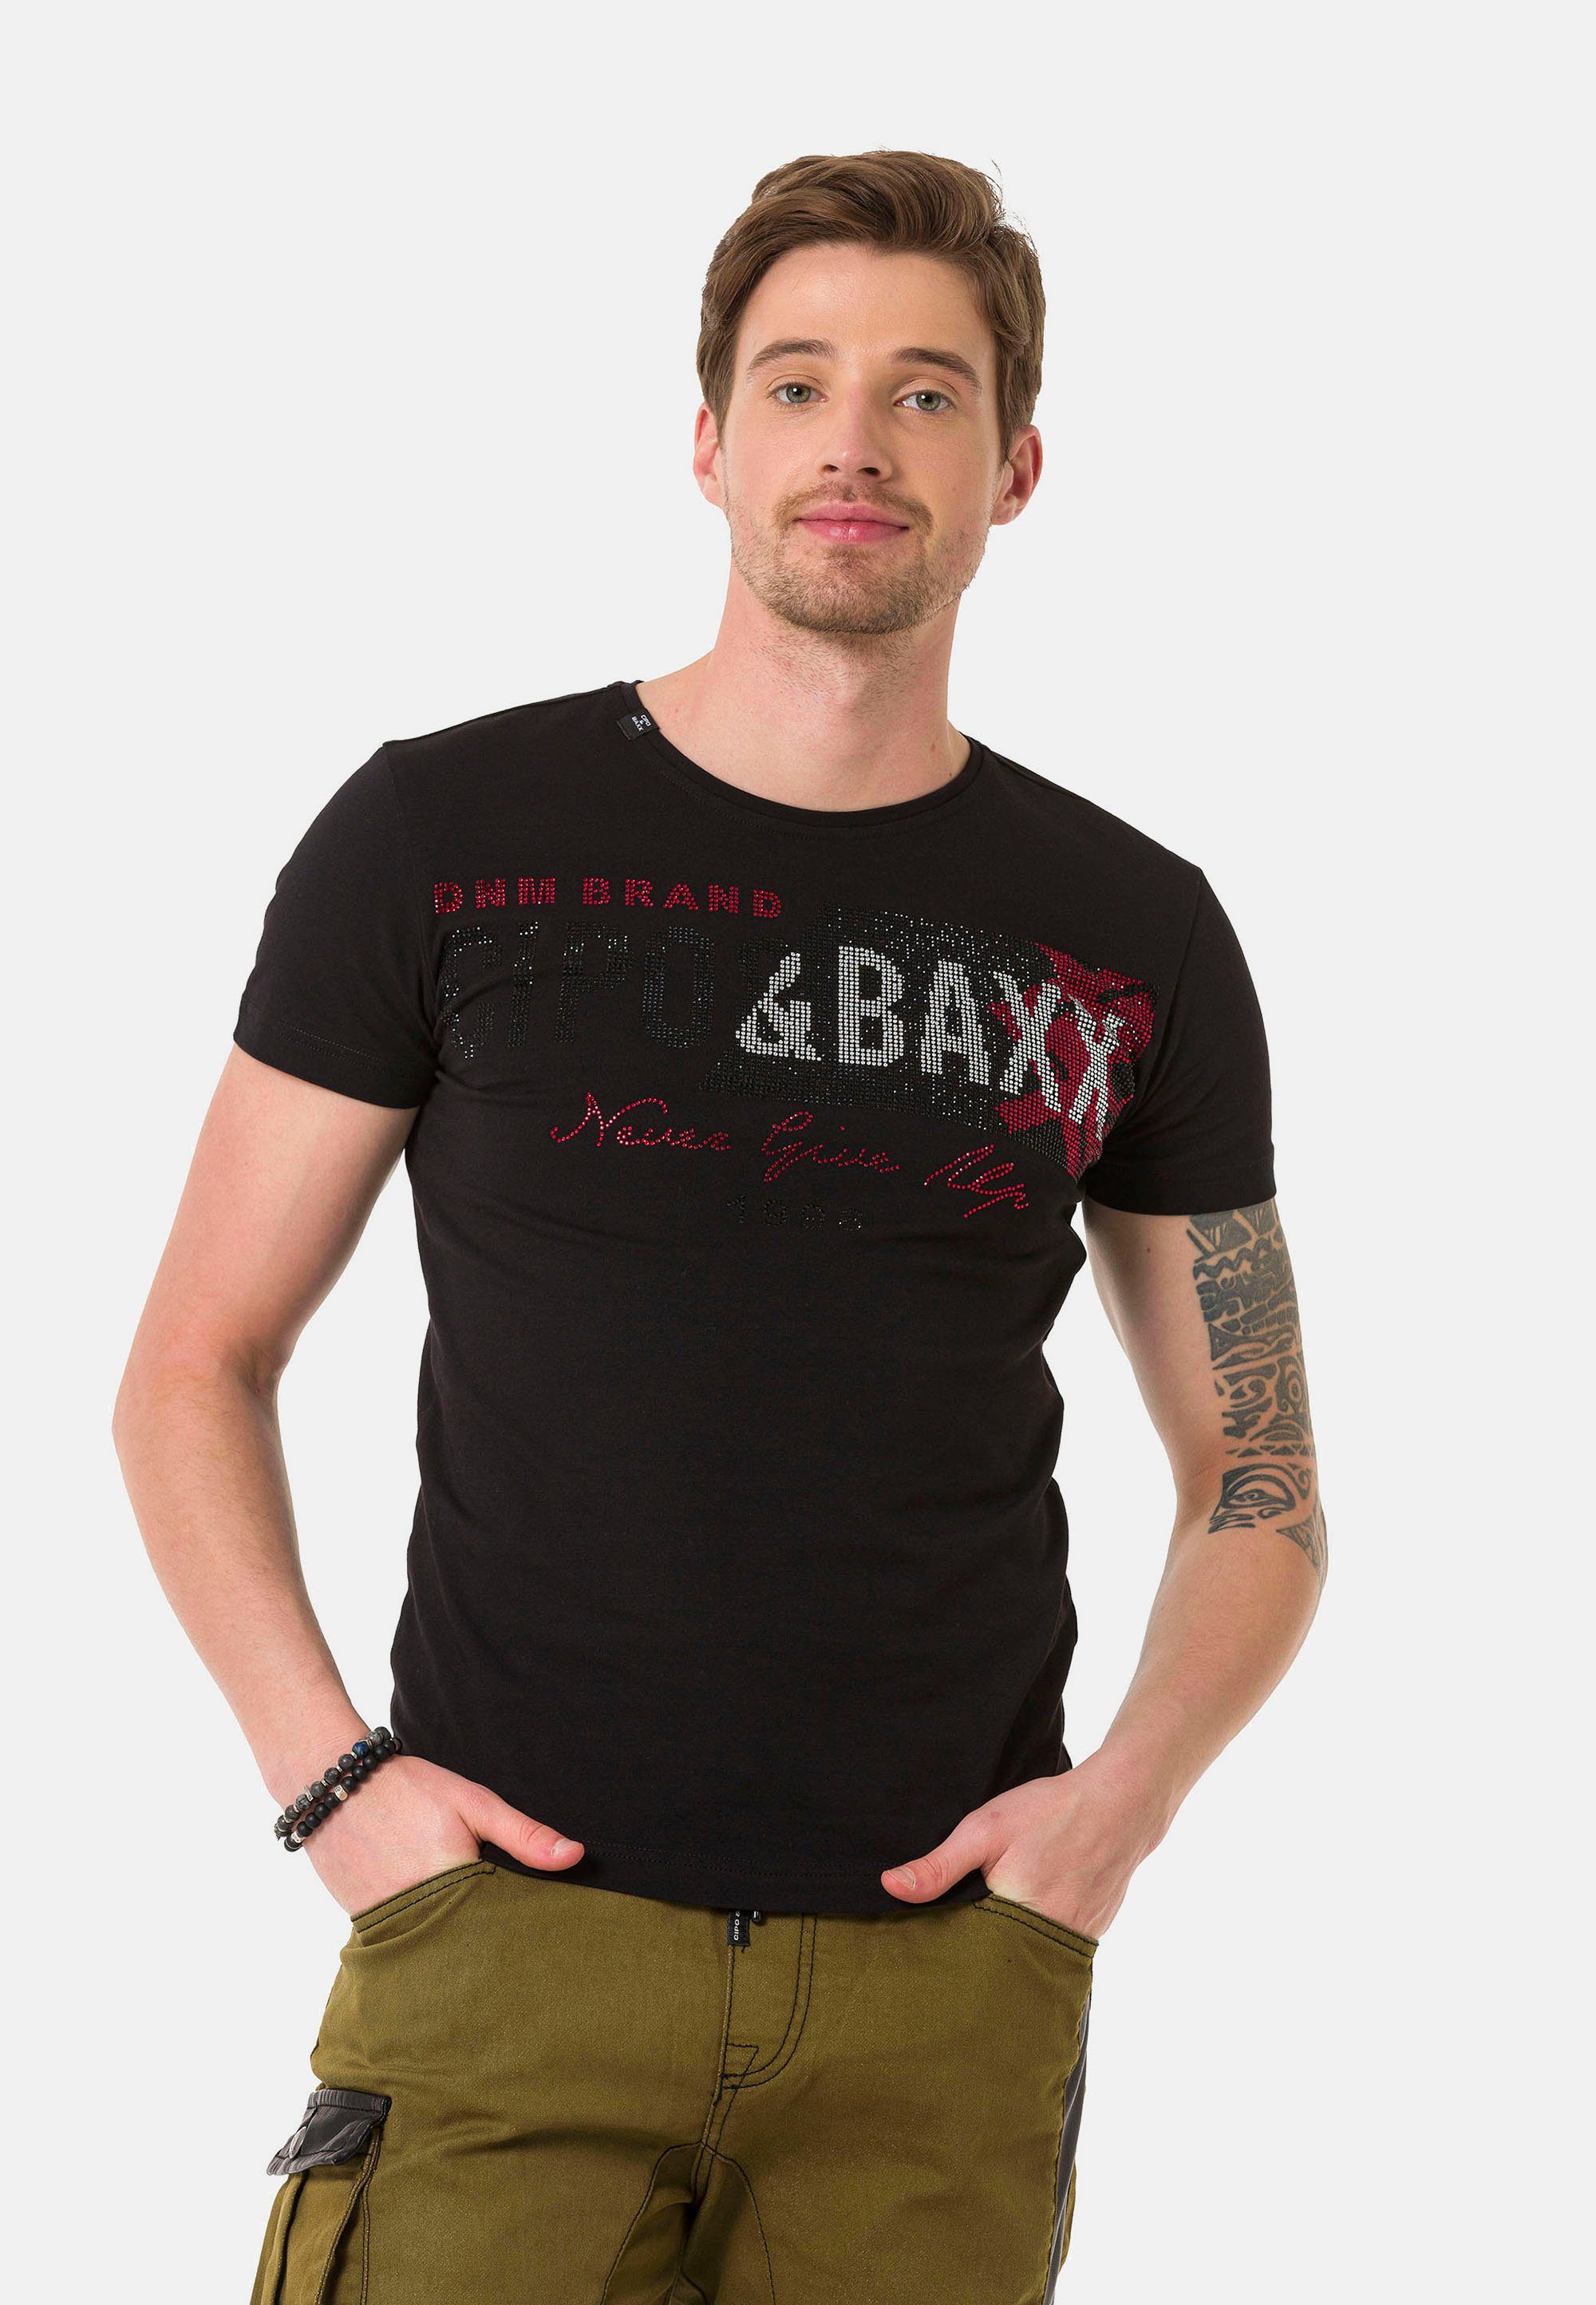 Markenprint T-Shirt mit großem Cipo & Baxx